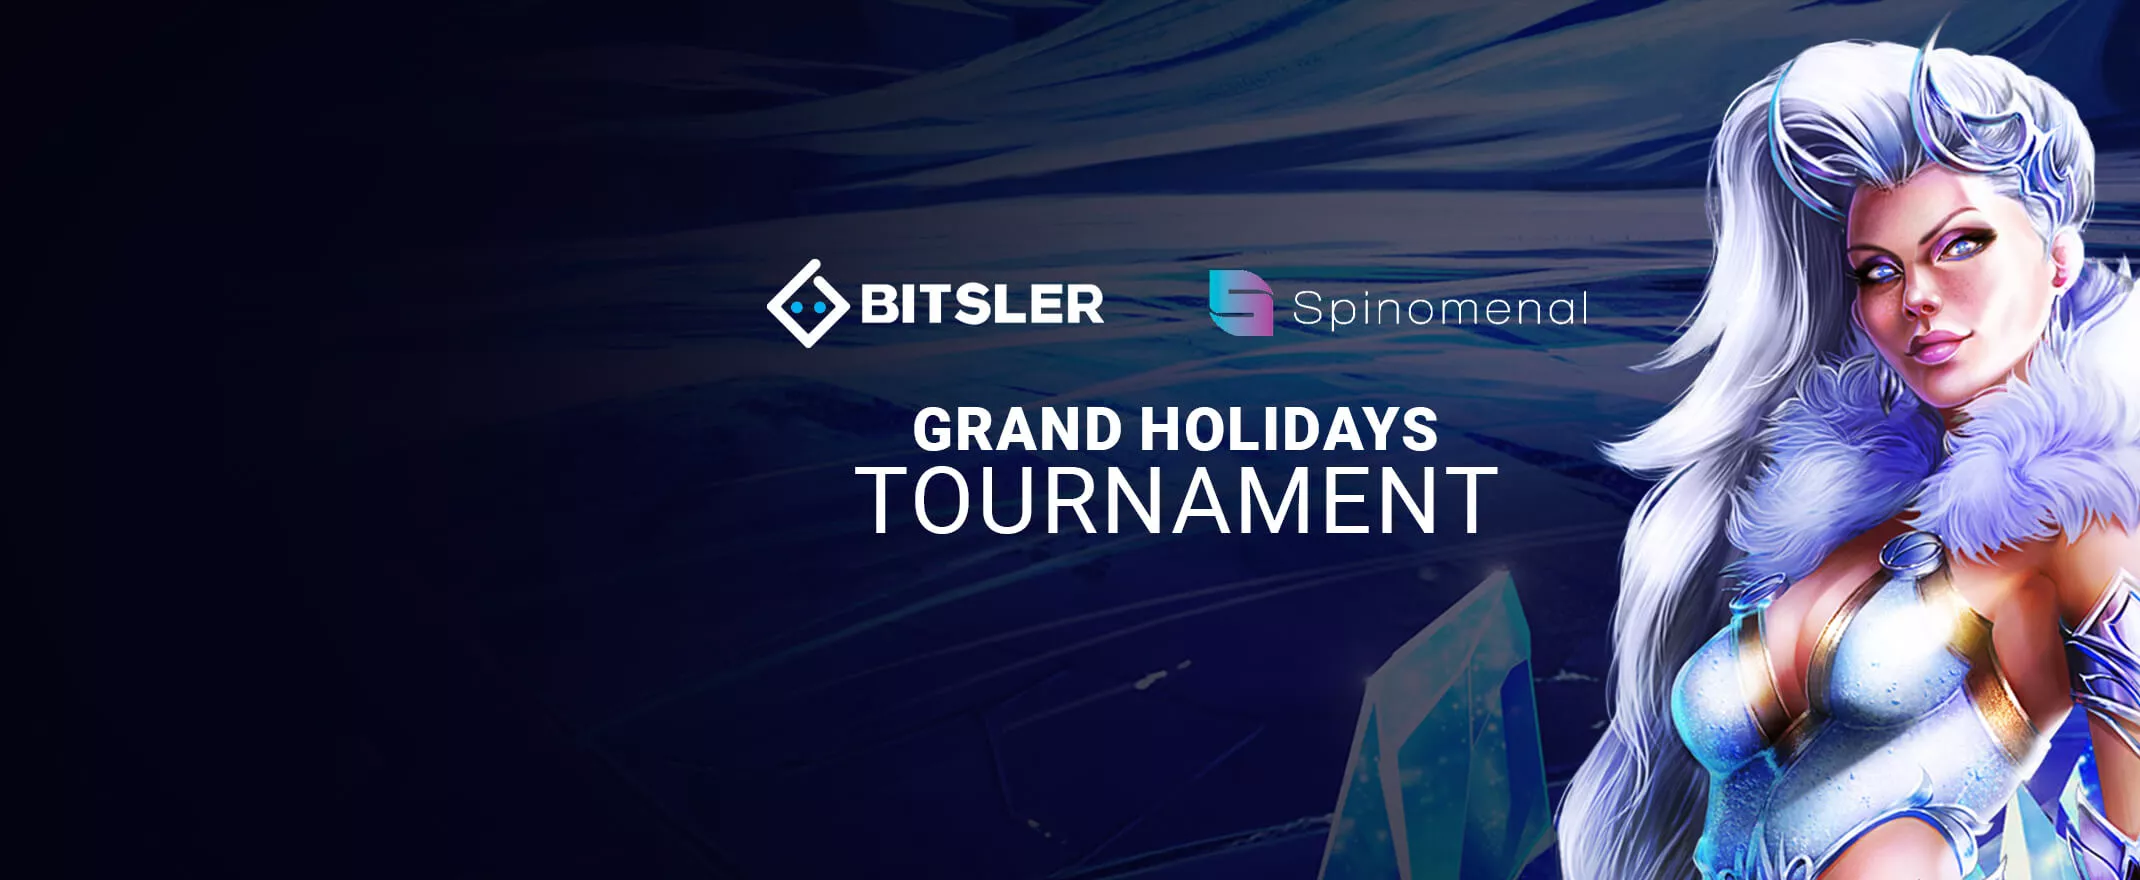 Bitsler Casino Starts New Tournament